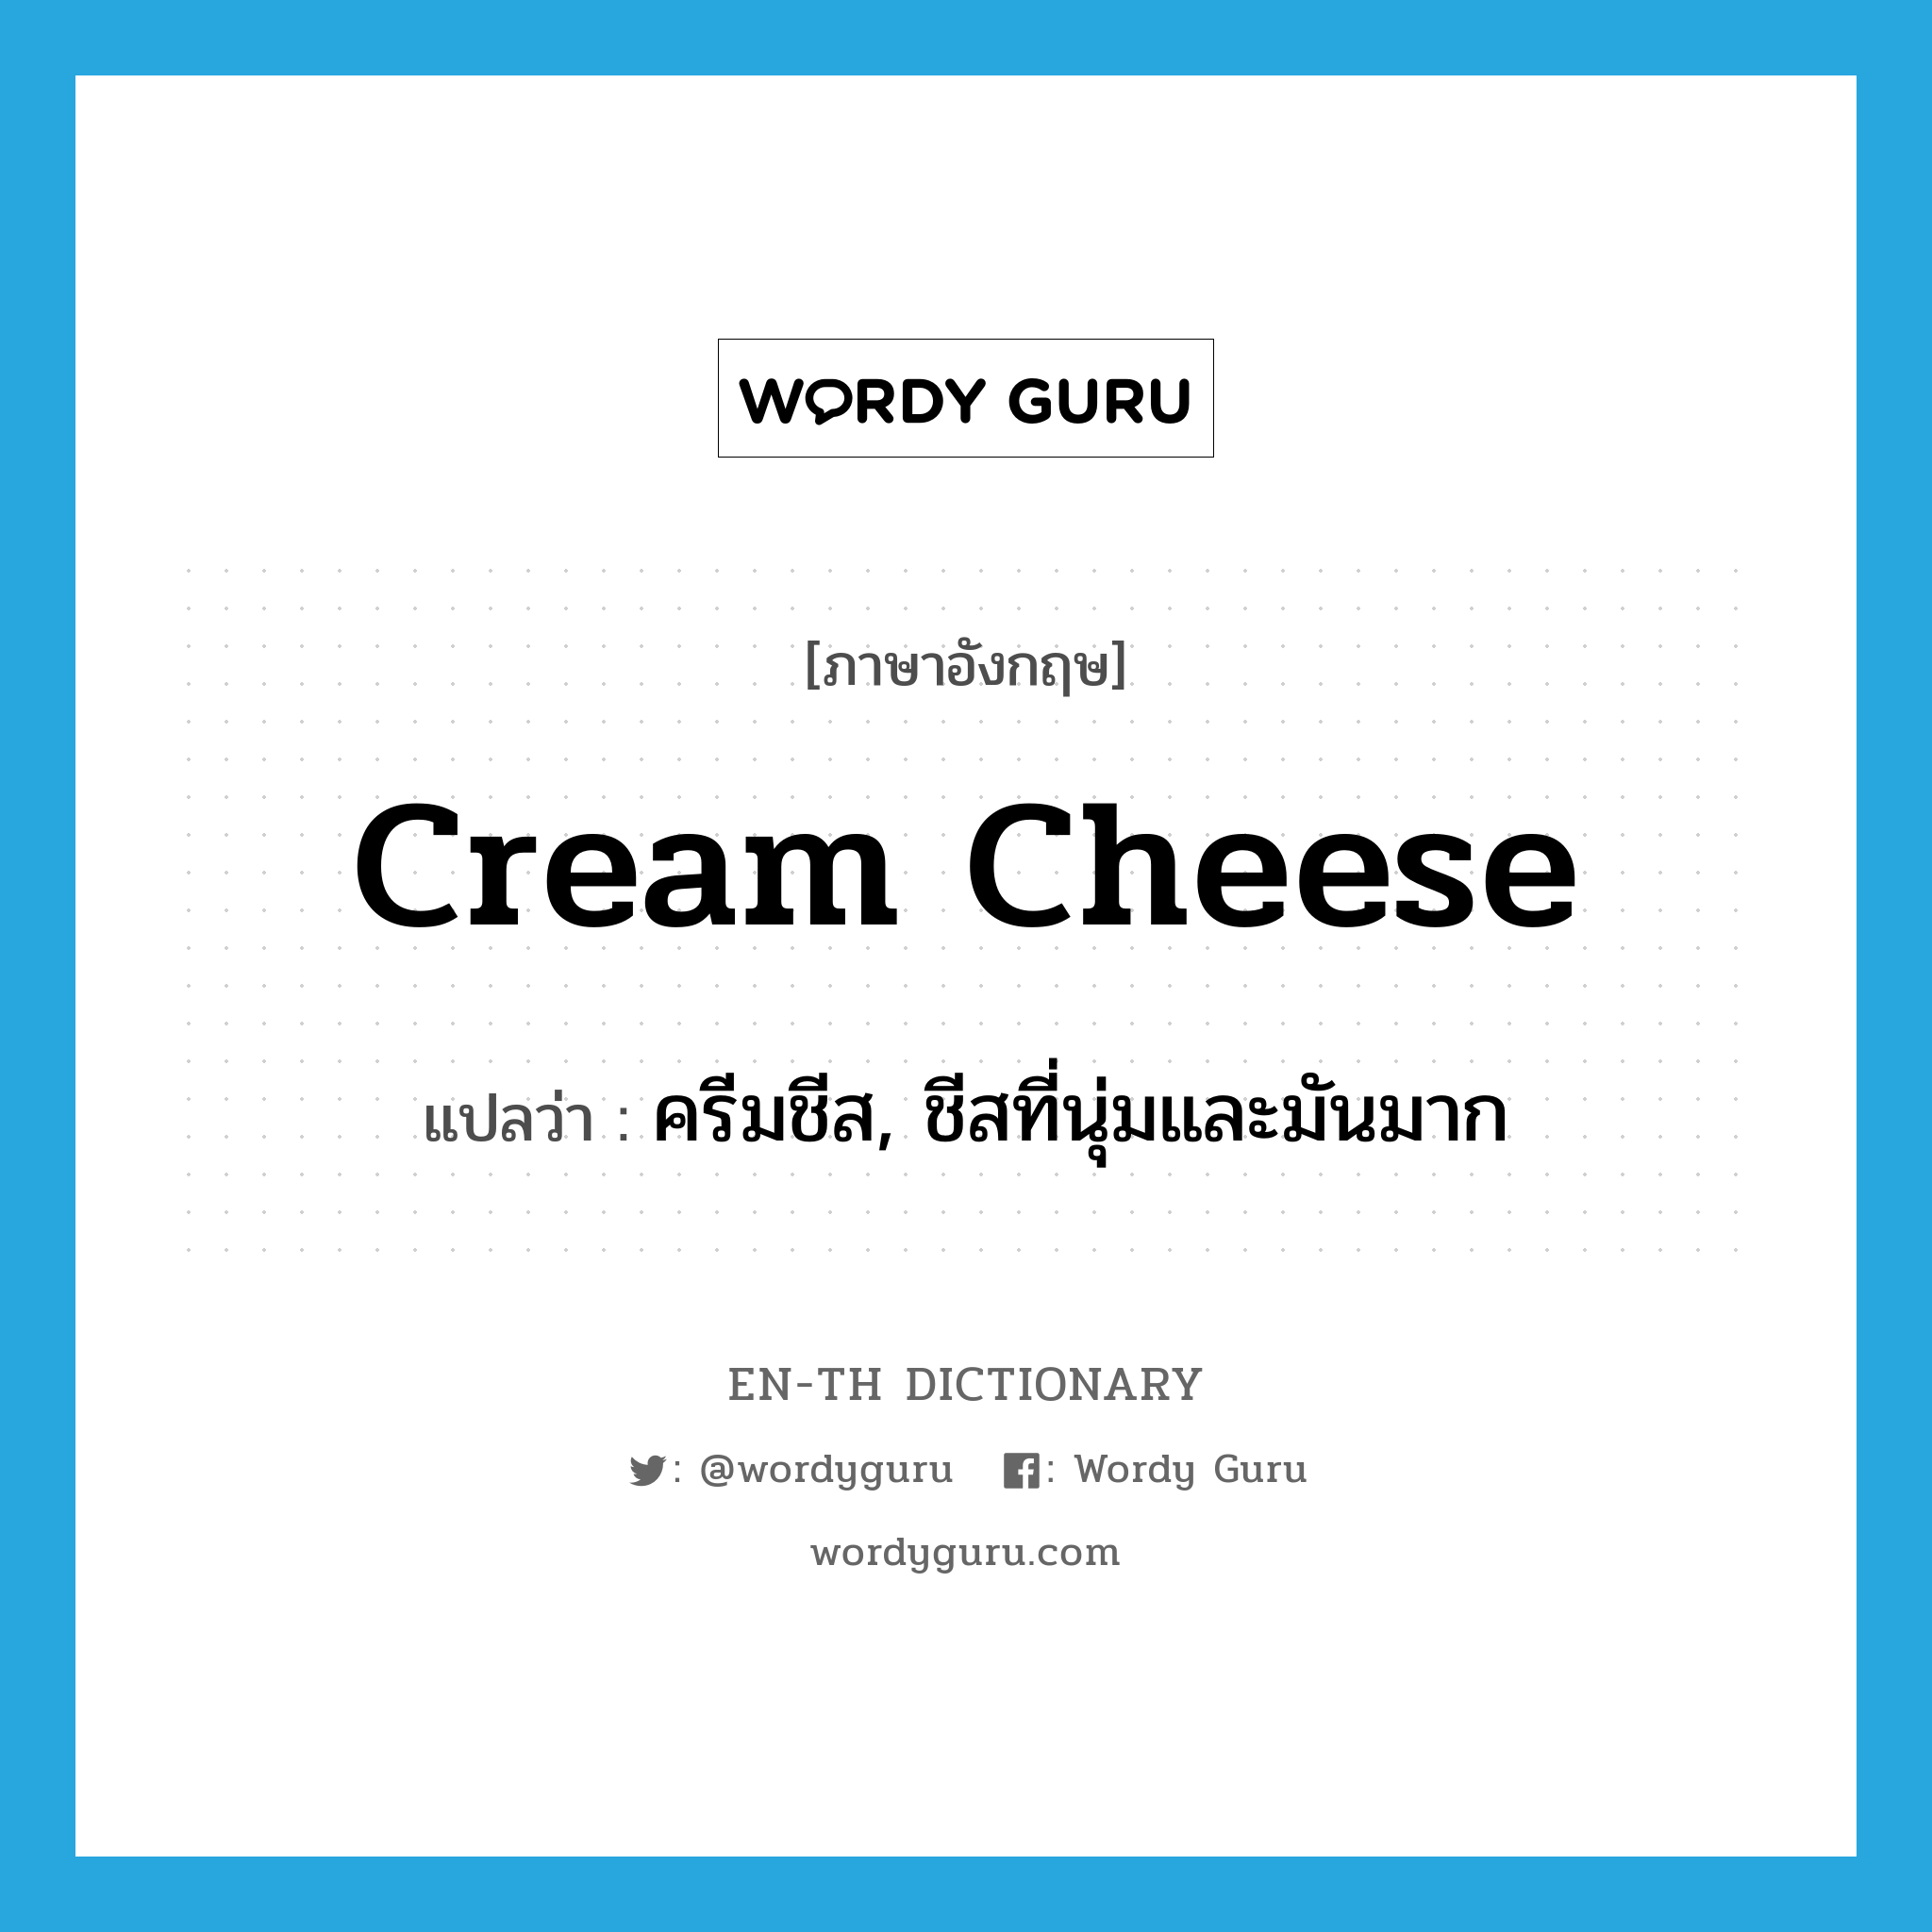 ครีมชีส, ชีสที่นุ่มและมันมาก ภาษาอังกฤษ?, คำศัพท์ภาษาอังกฤษ ครีมชีส, ชีสที่นุ่มและมันมาก แปลว่า cream cheese ประเภท N หมวด N